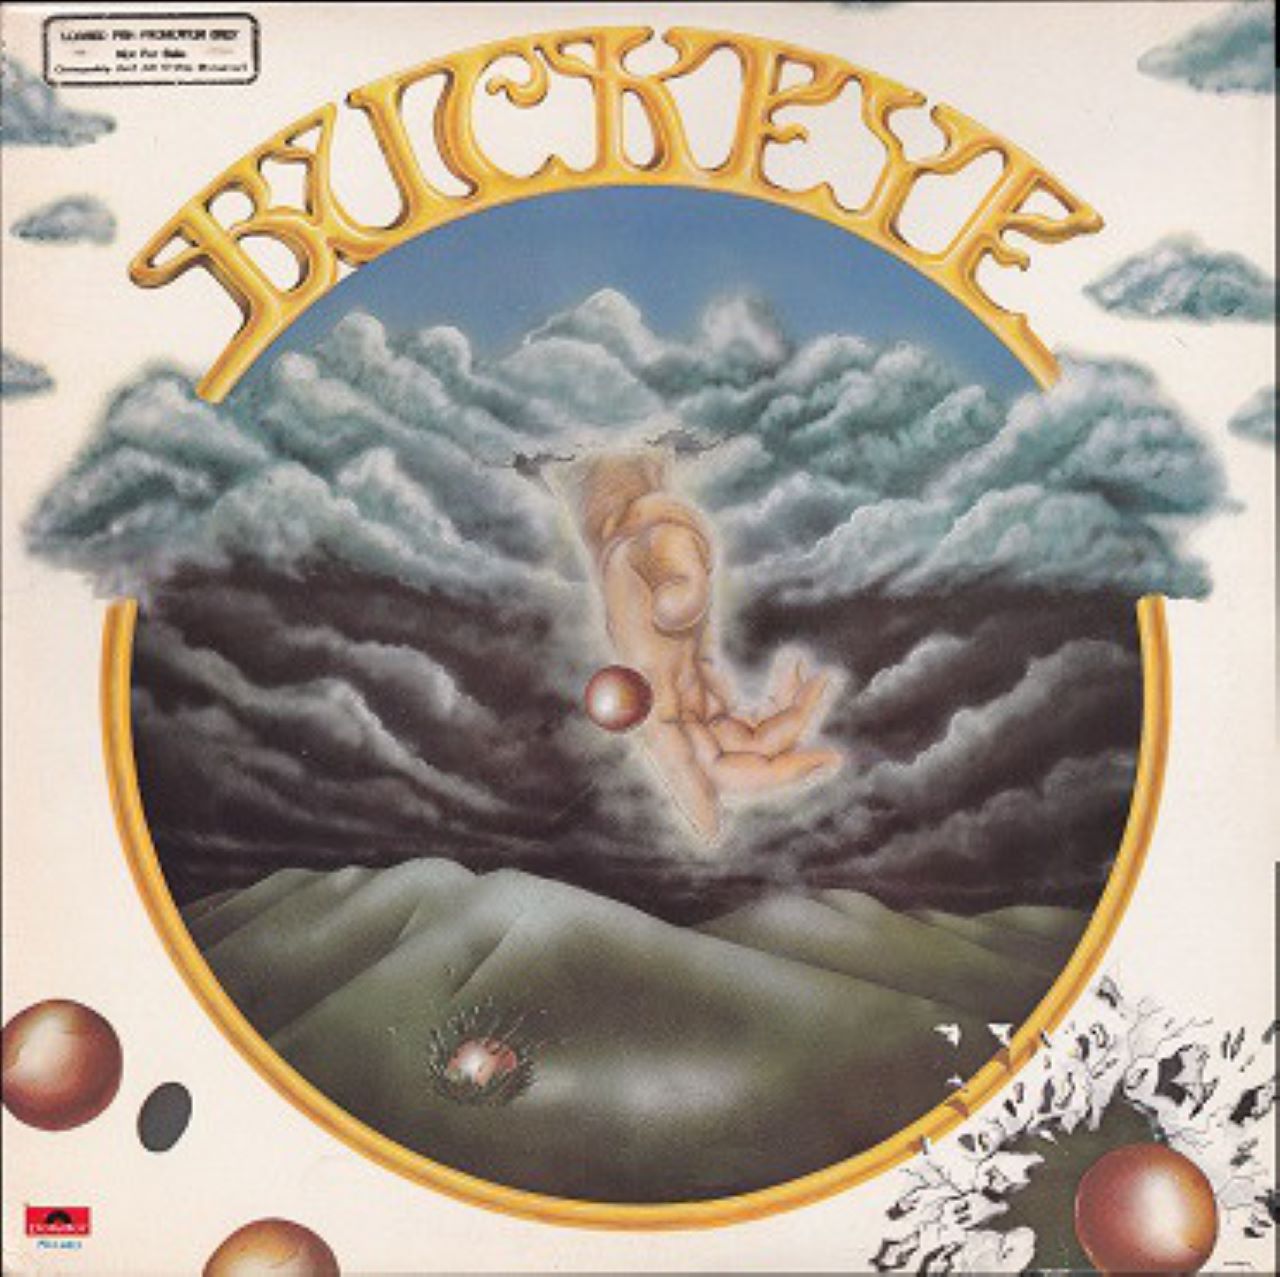 Buckeye - Buckeye cover album